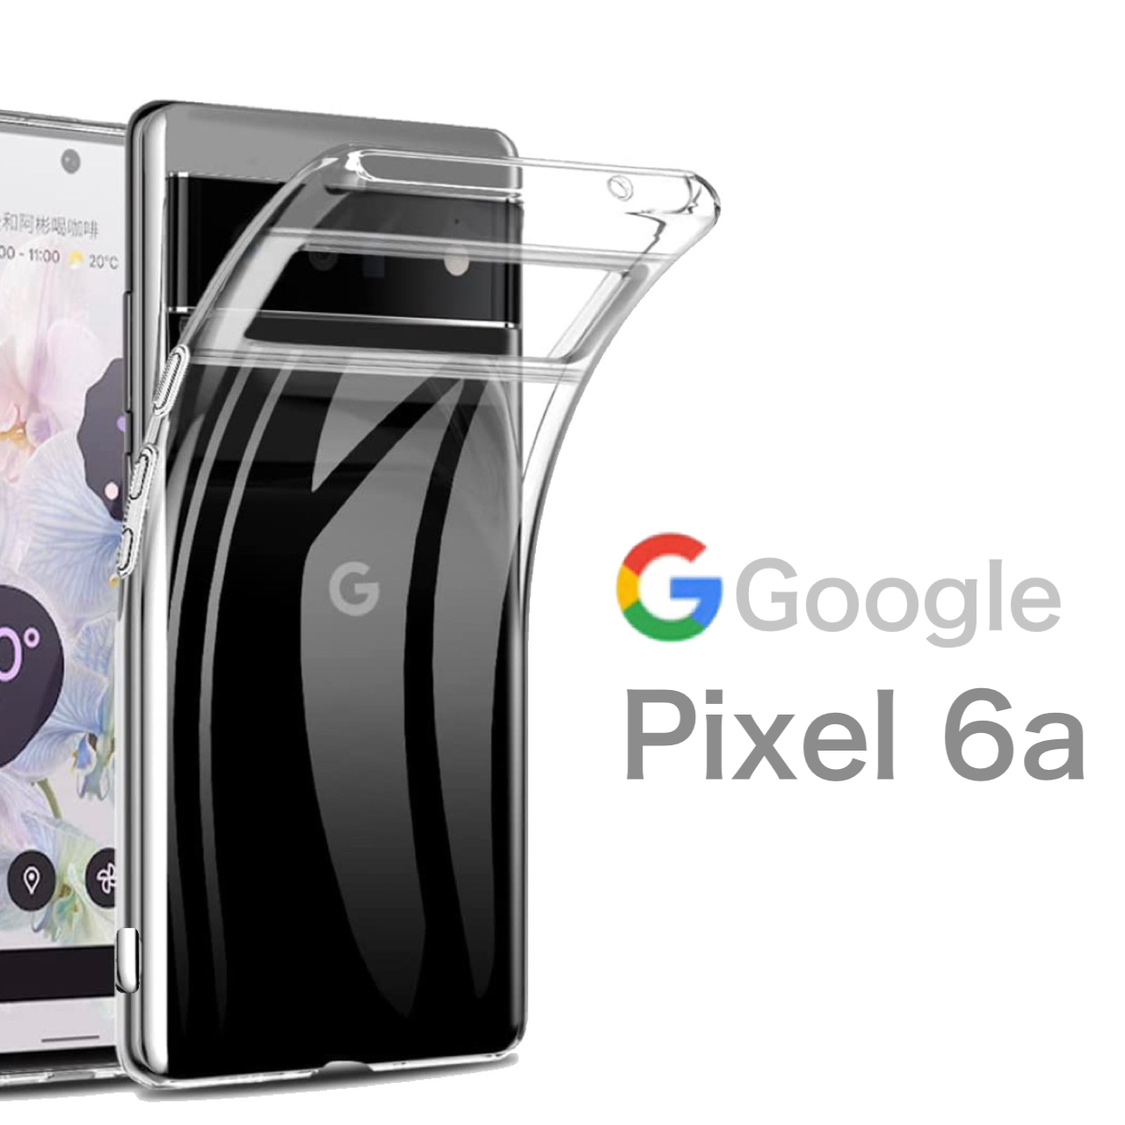 送料無料限定セール中Google Pixel 6a ハード ハードケース ソフト ソフトケース クリアケース GooglePixel6a Pixel6aケース Pixel6aカバー ピクセル グーグル グーグルピクセル 透明 透明ケース GooglePixel6aケース GooglePixel6aカバー